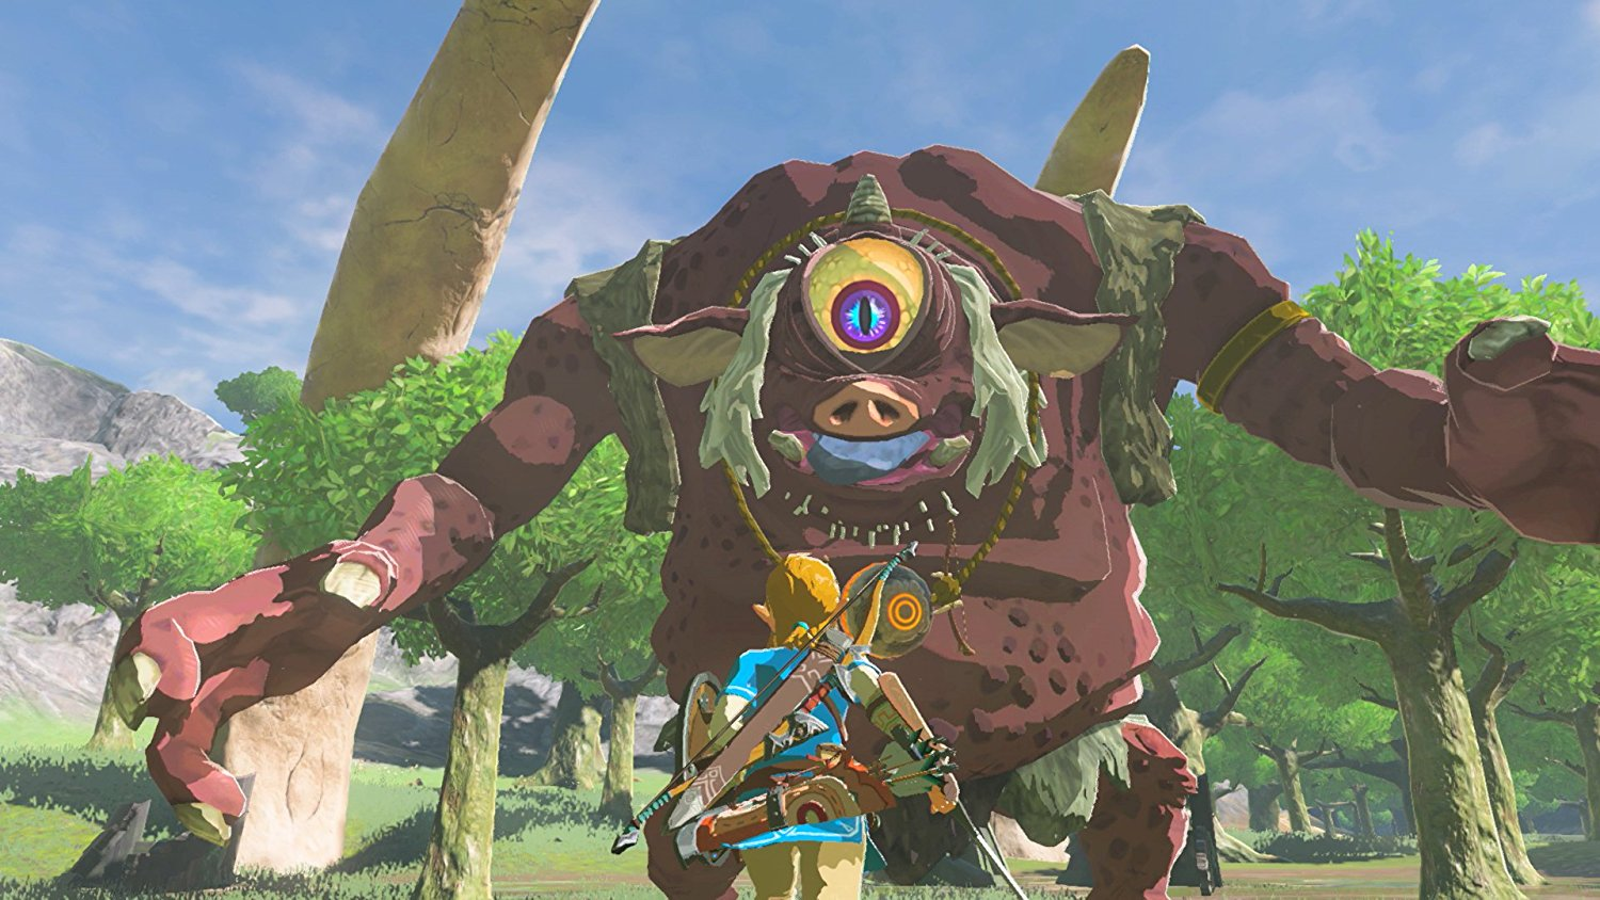 The Legend of Zelda: Breath of the Wild - Metacritic